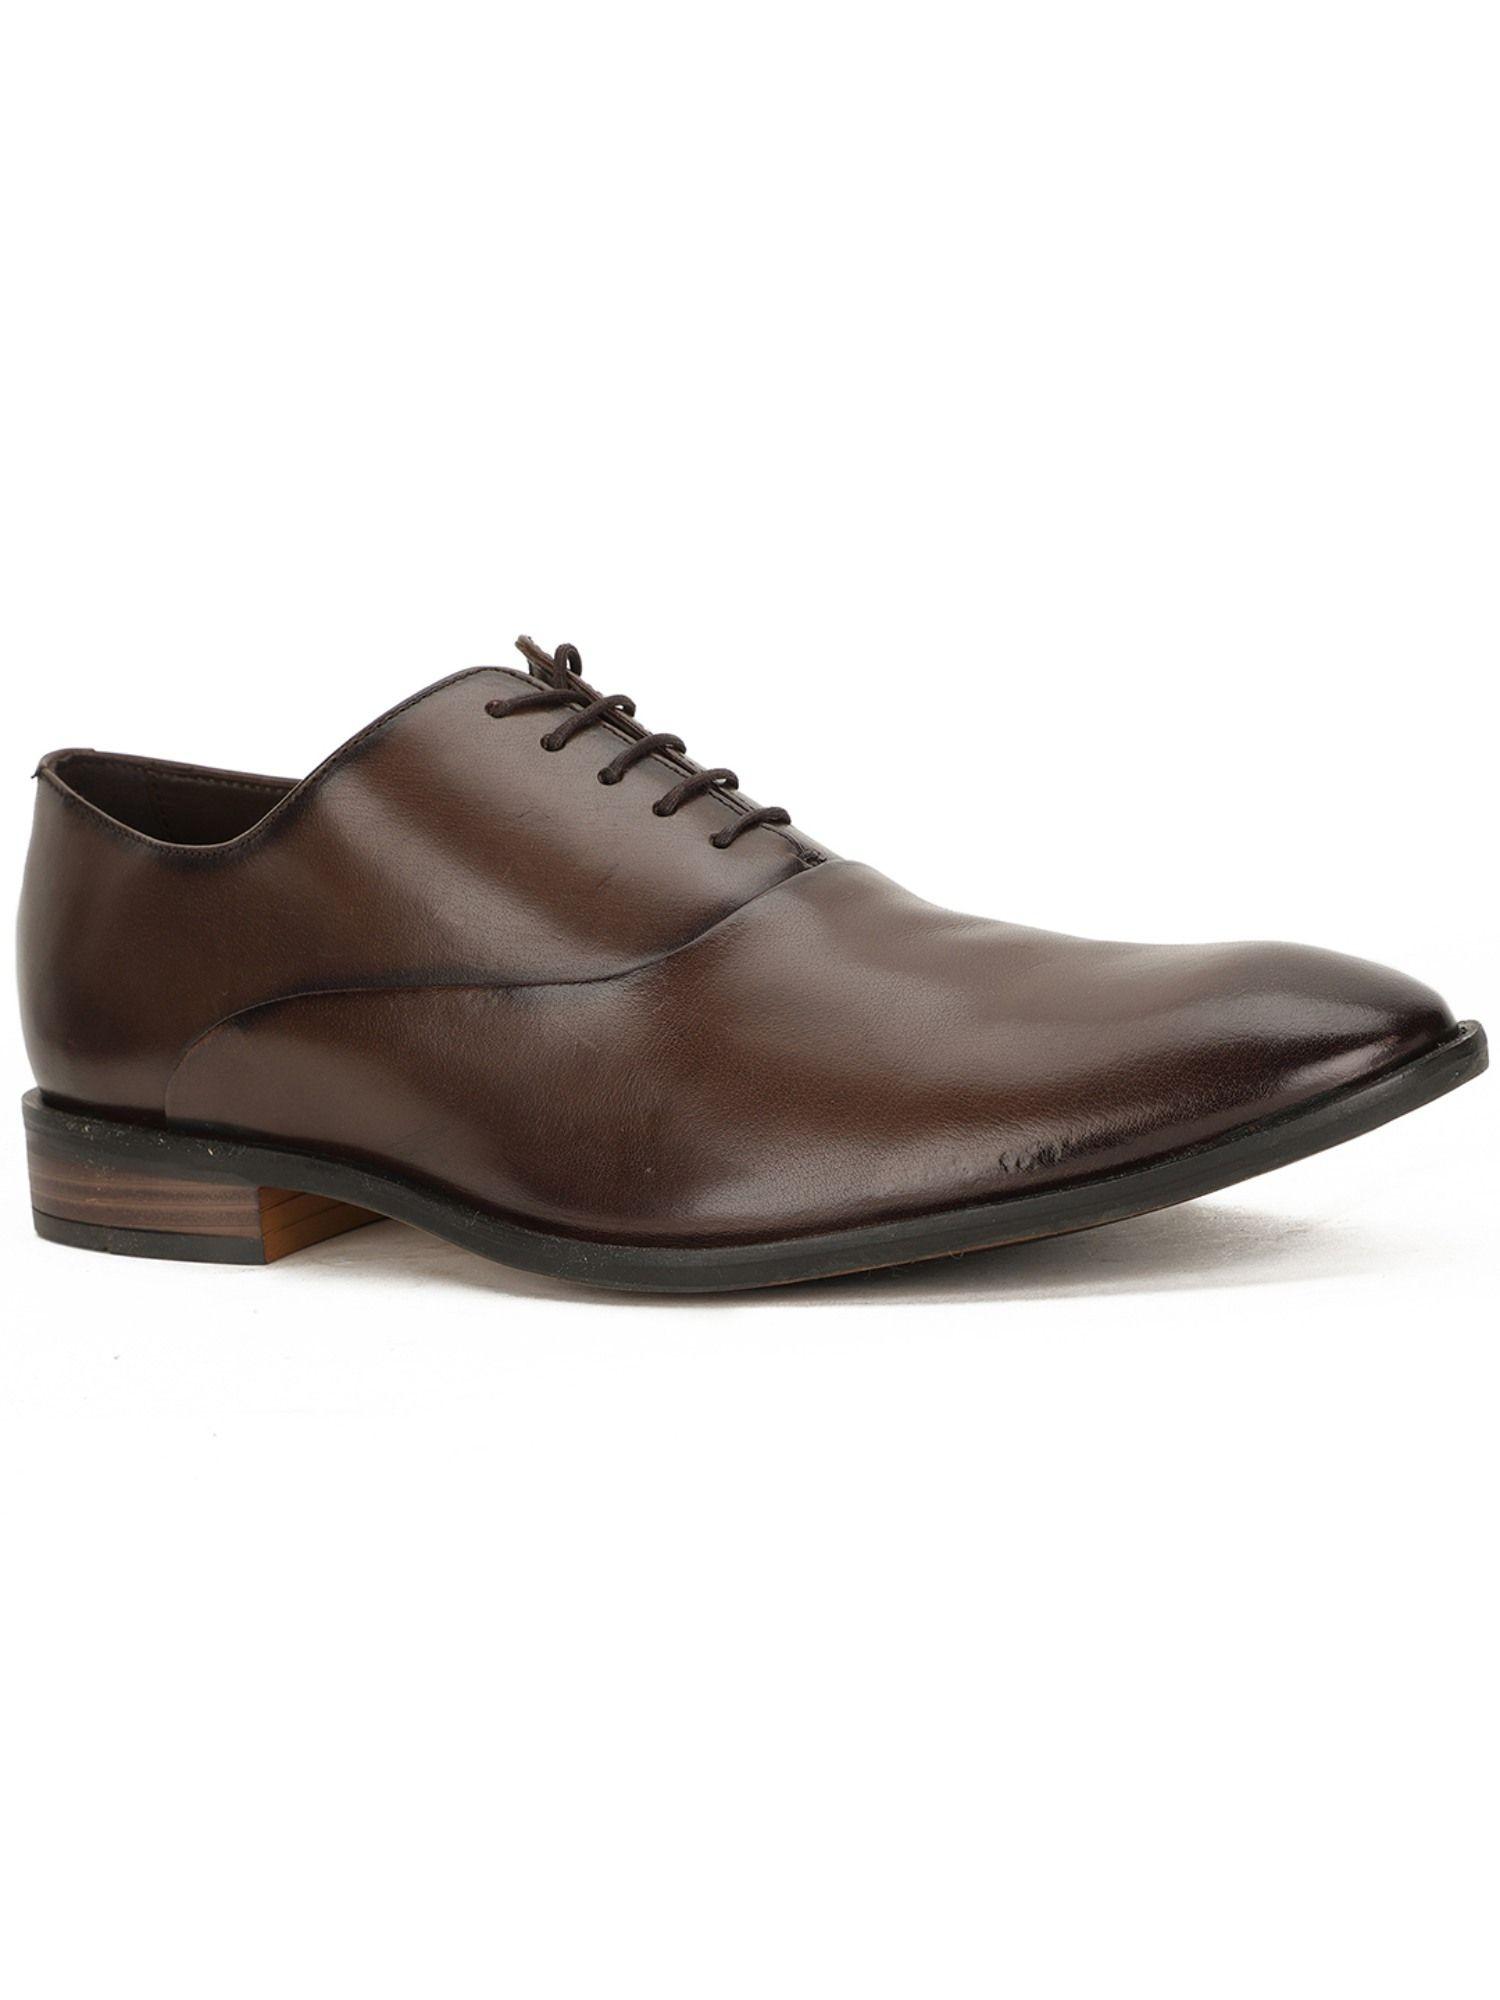 brown-formal-shoes-for-men